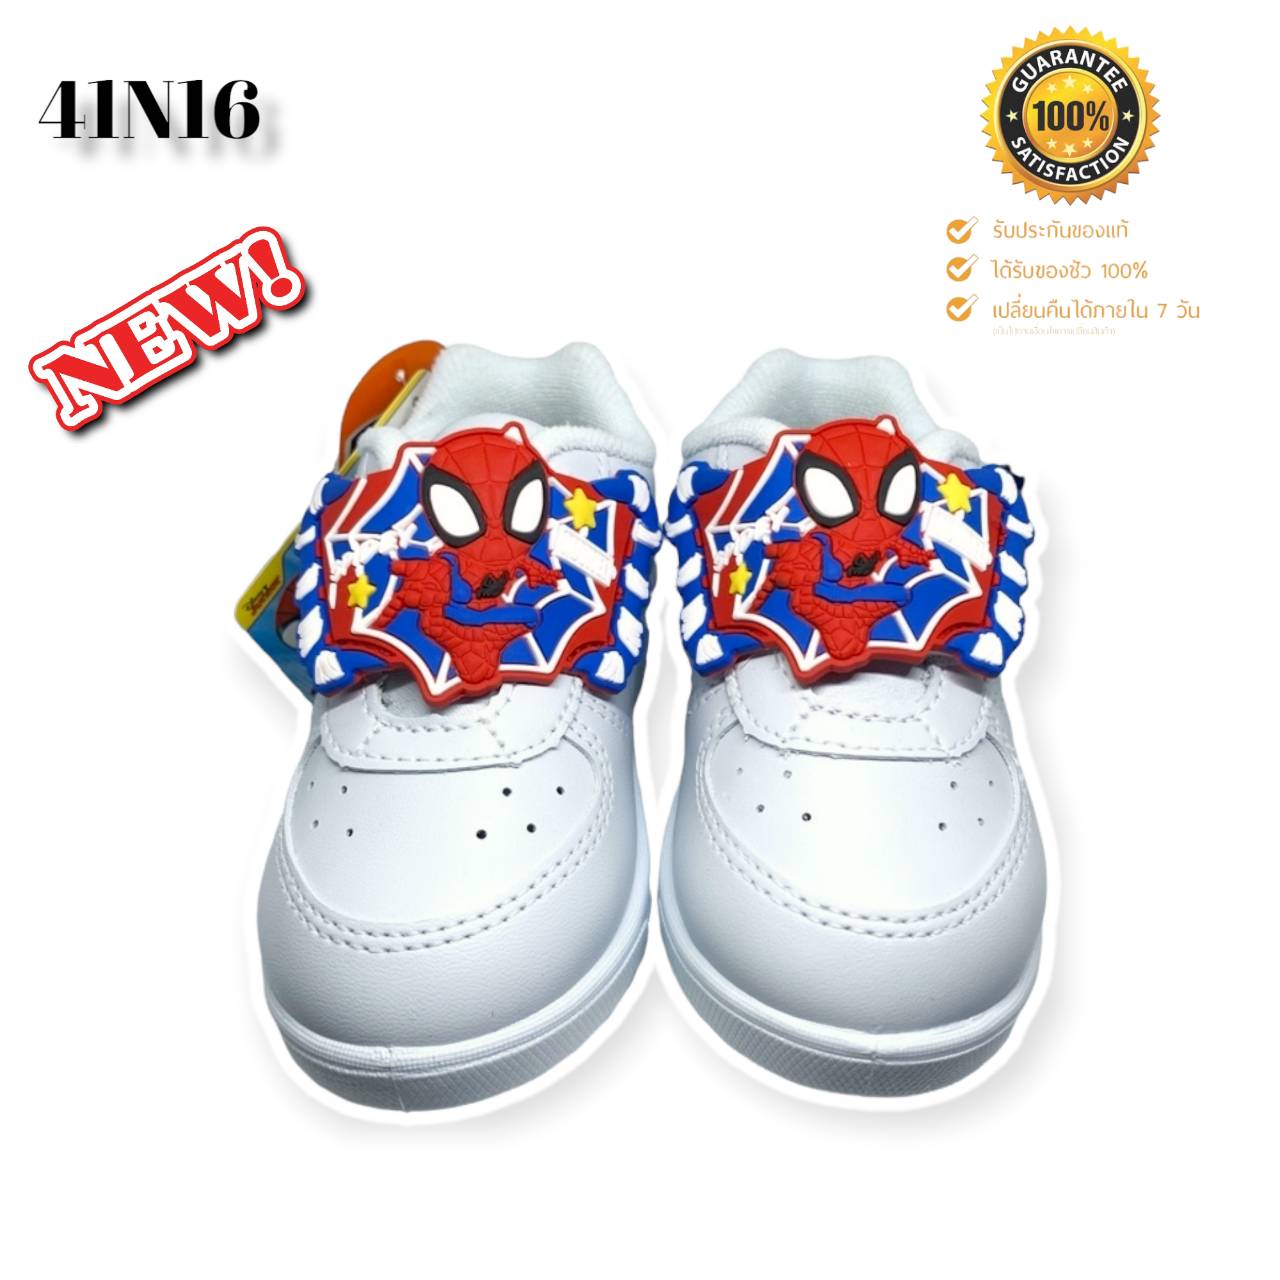 ลองดูภาพสินค้า ADDA รองเท้านักเรียนชายอนุบาล รองเท้านักเรียนชาย รองเท้าพละชาย สีขาว ADDA Spiderman ของแท้  NEW!!